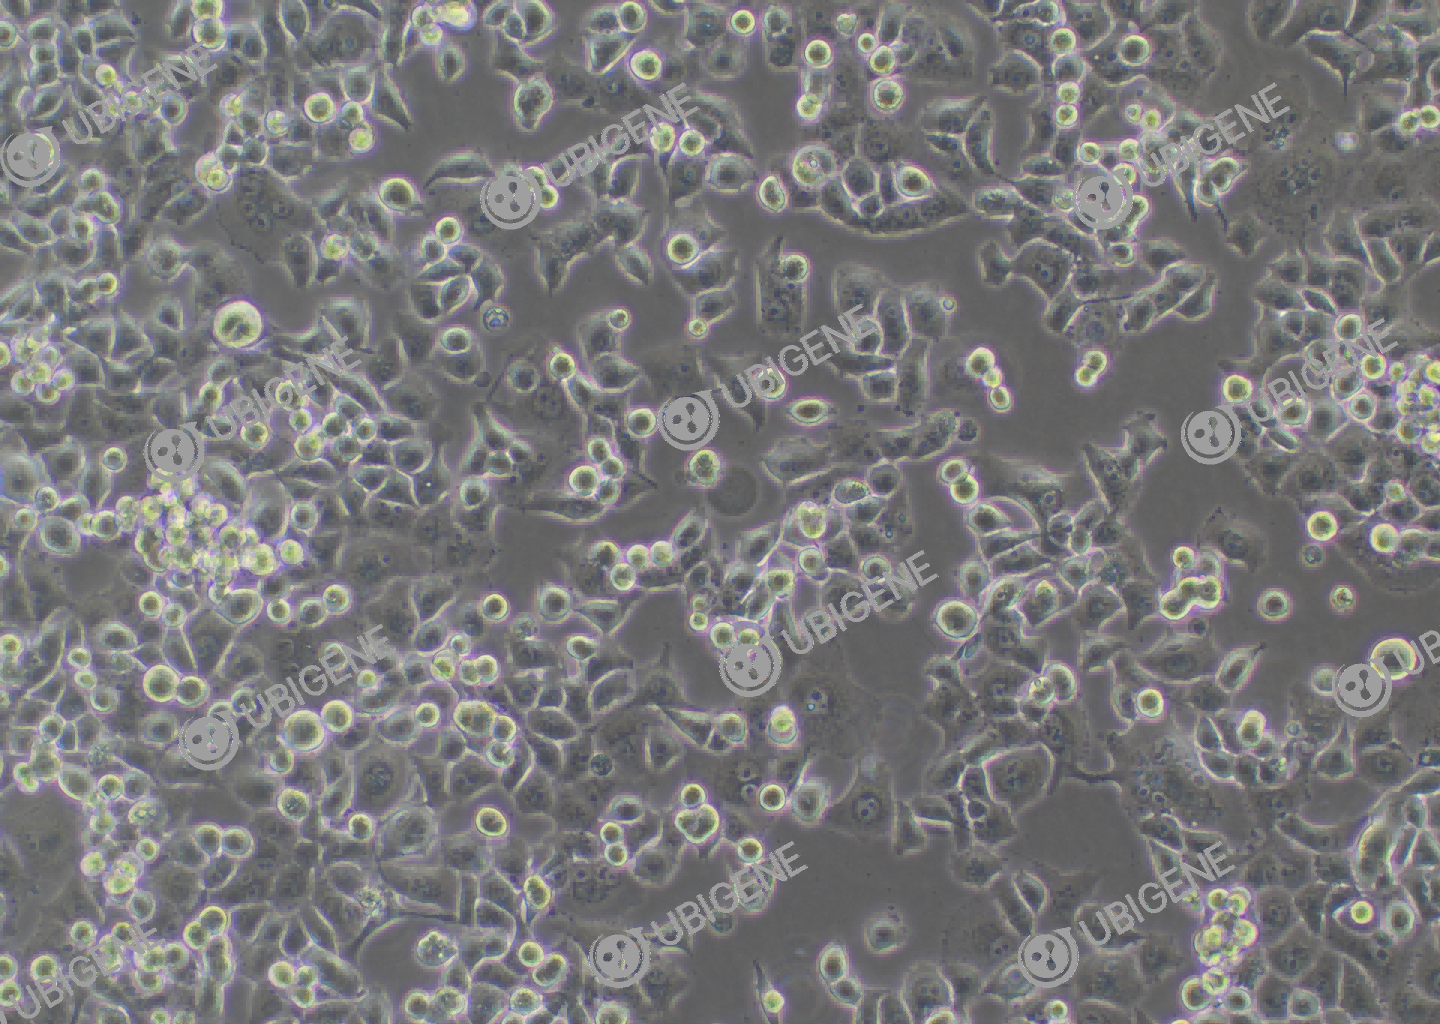 人胰腺癌细胞系(Panc-1)细胞形态培养图